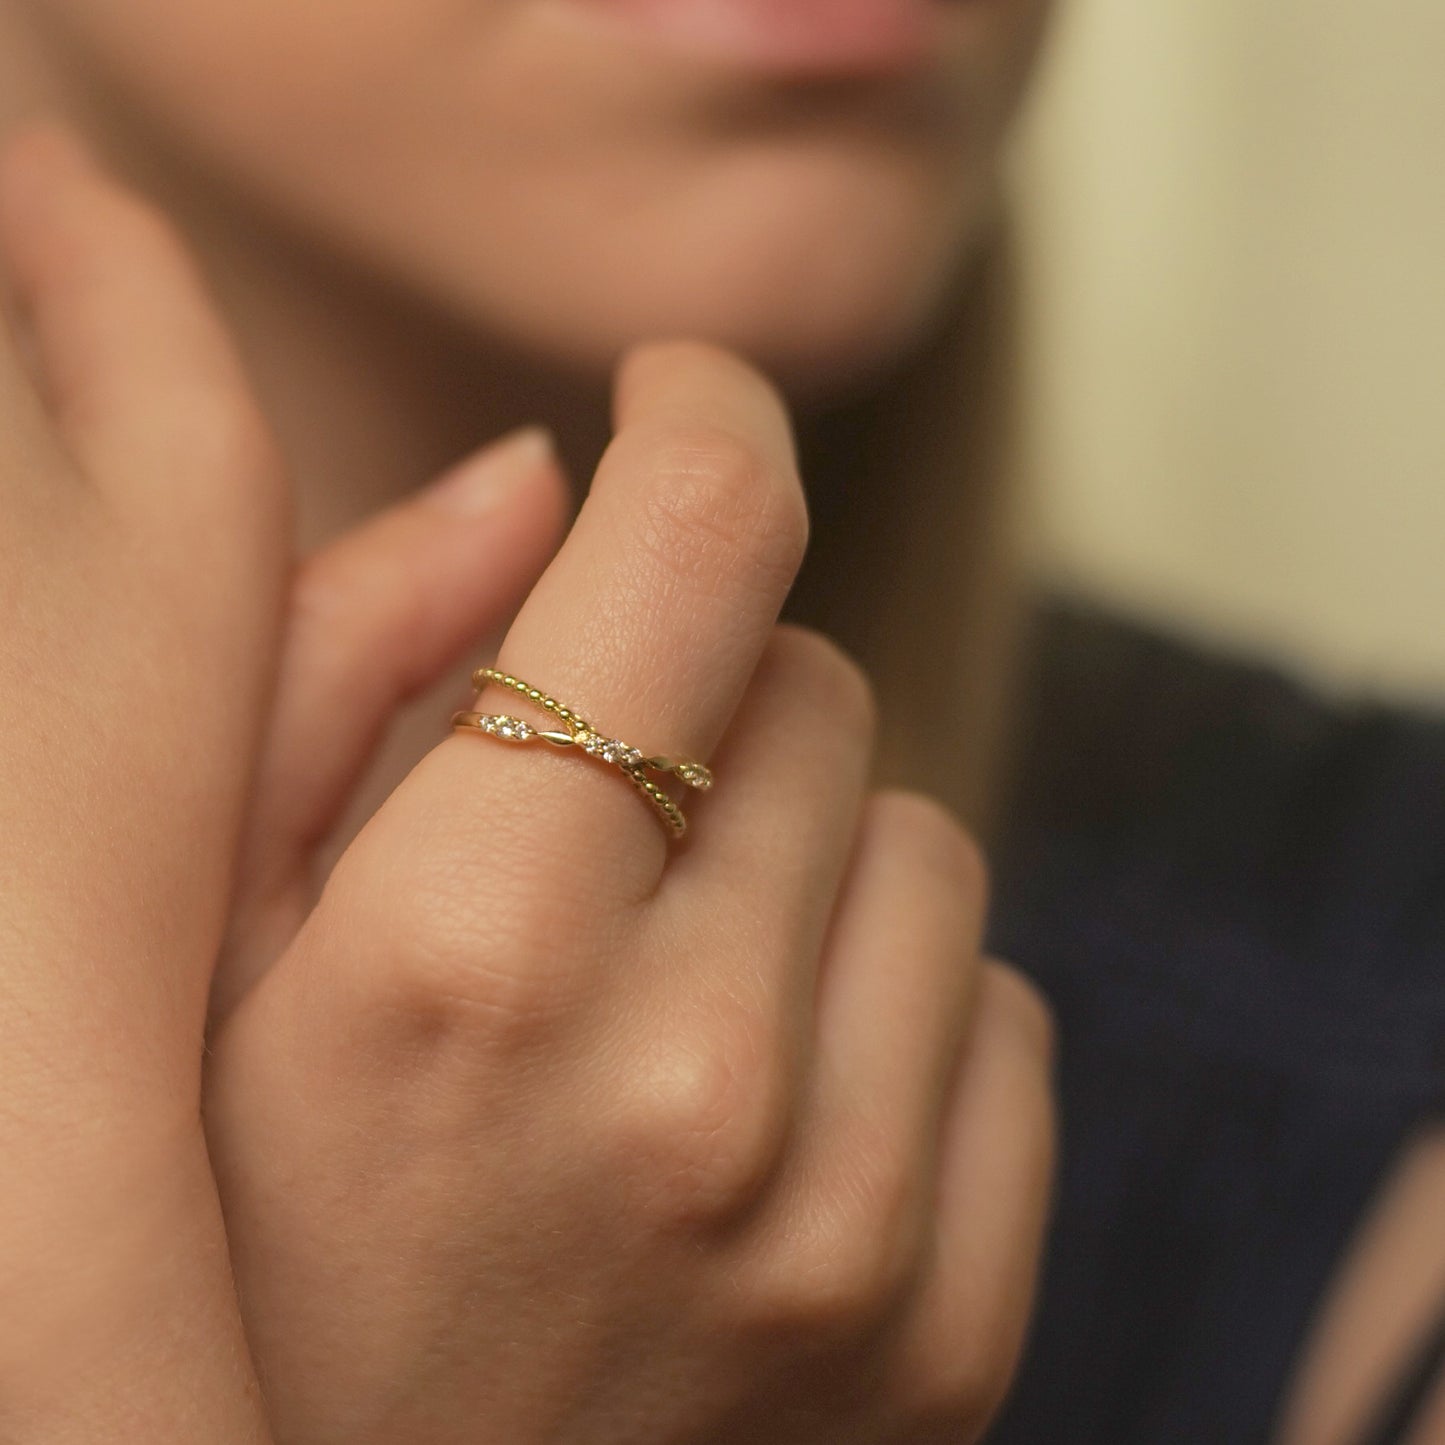 Rami Diamond Criss Cross Ring for Finger